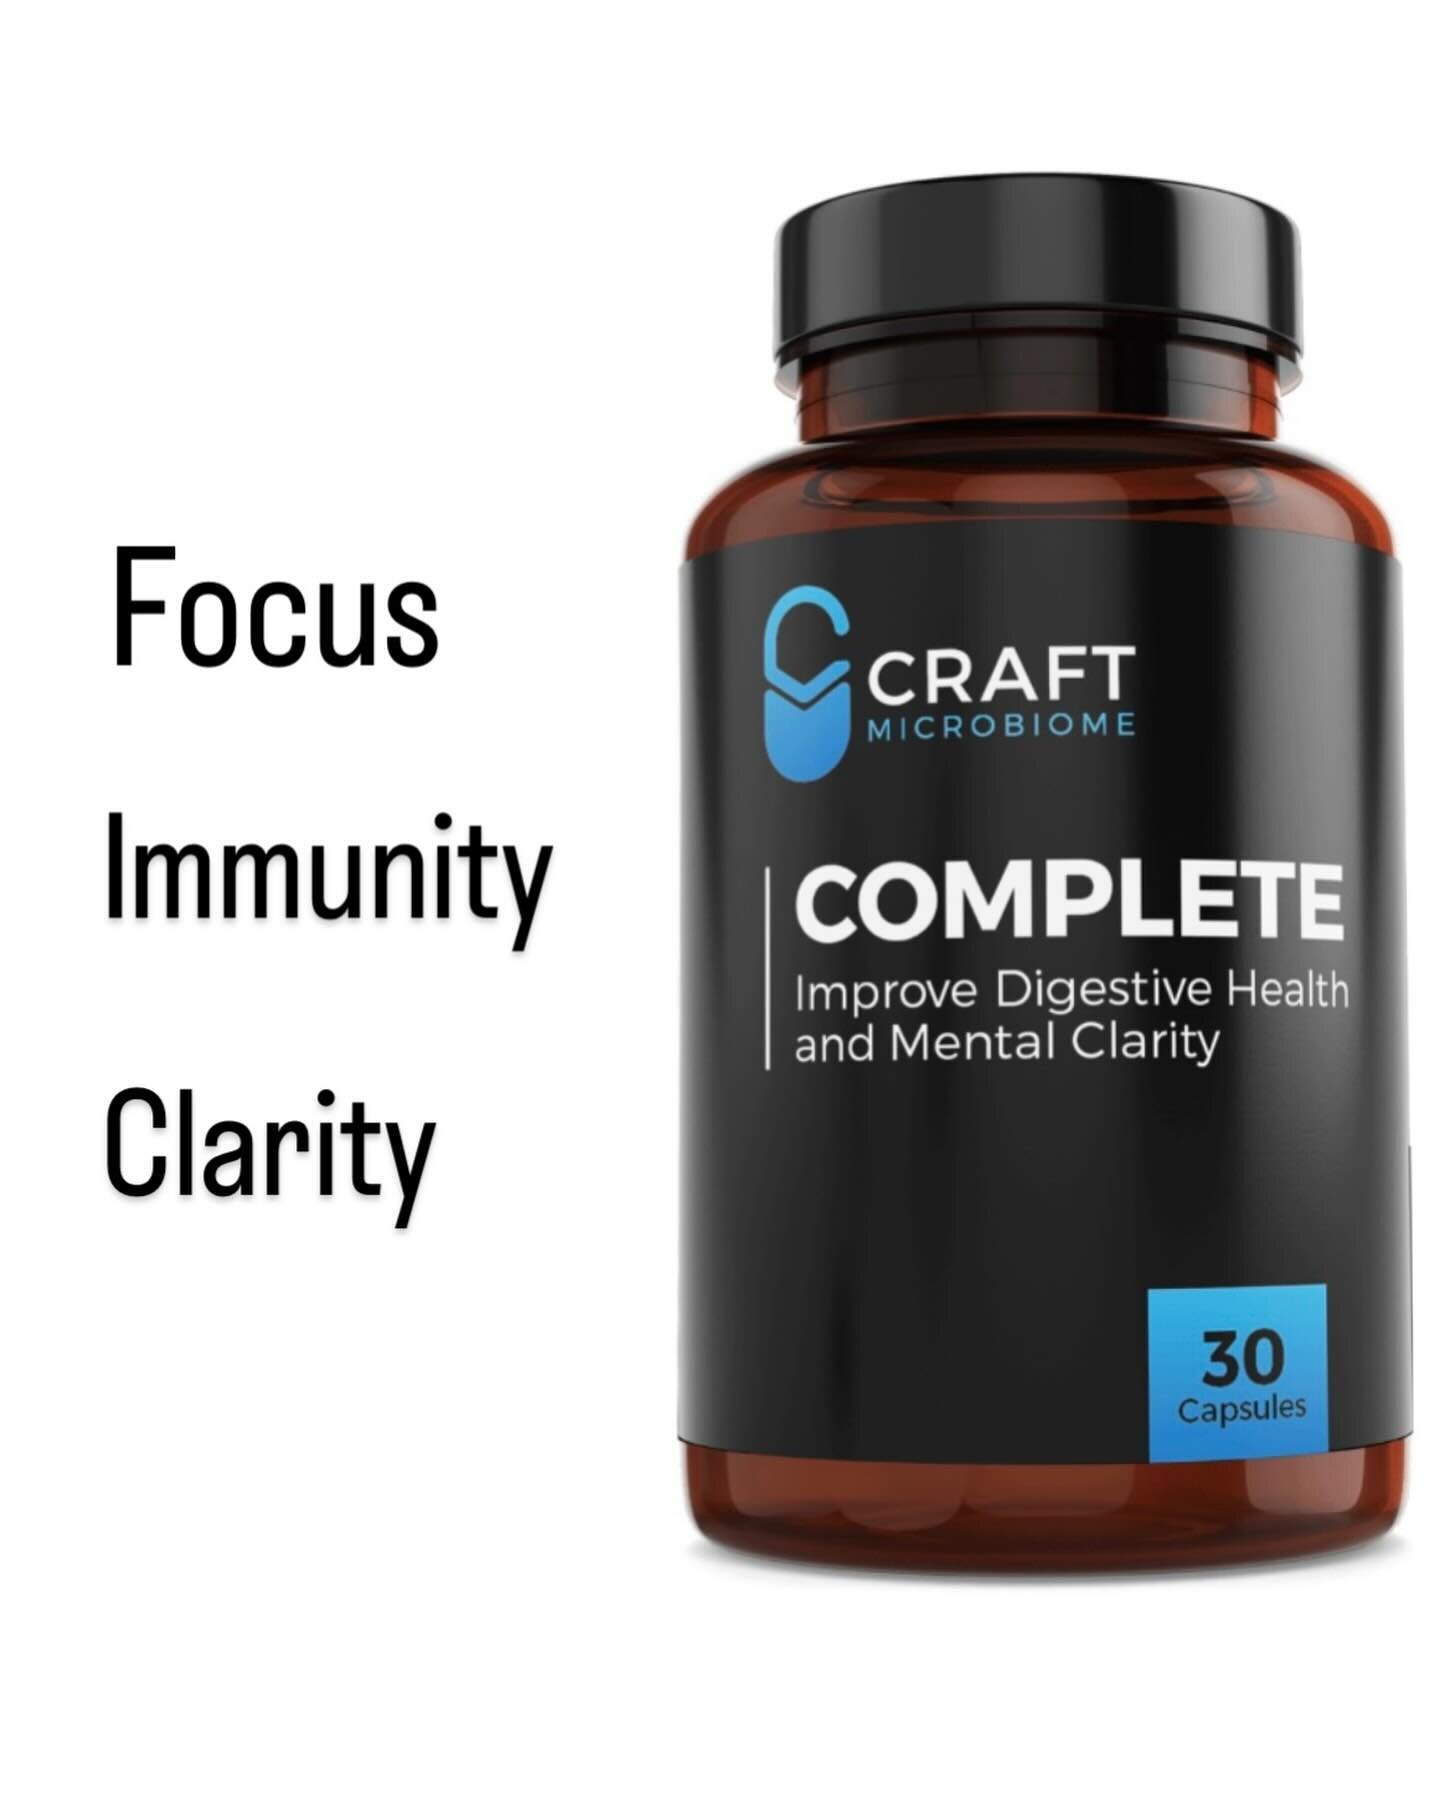 Focus ✅
Immunity ✅
Clarity ✅